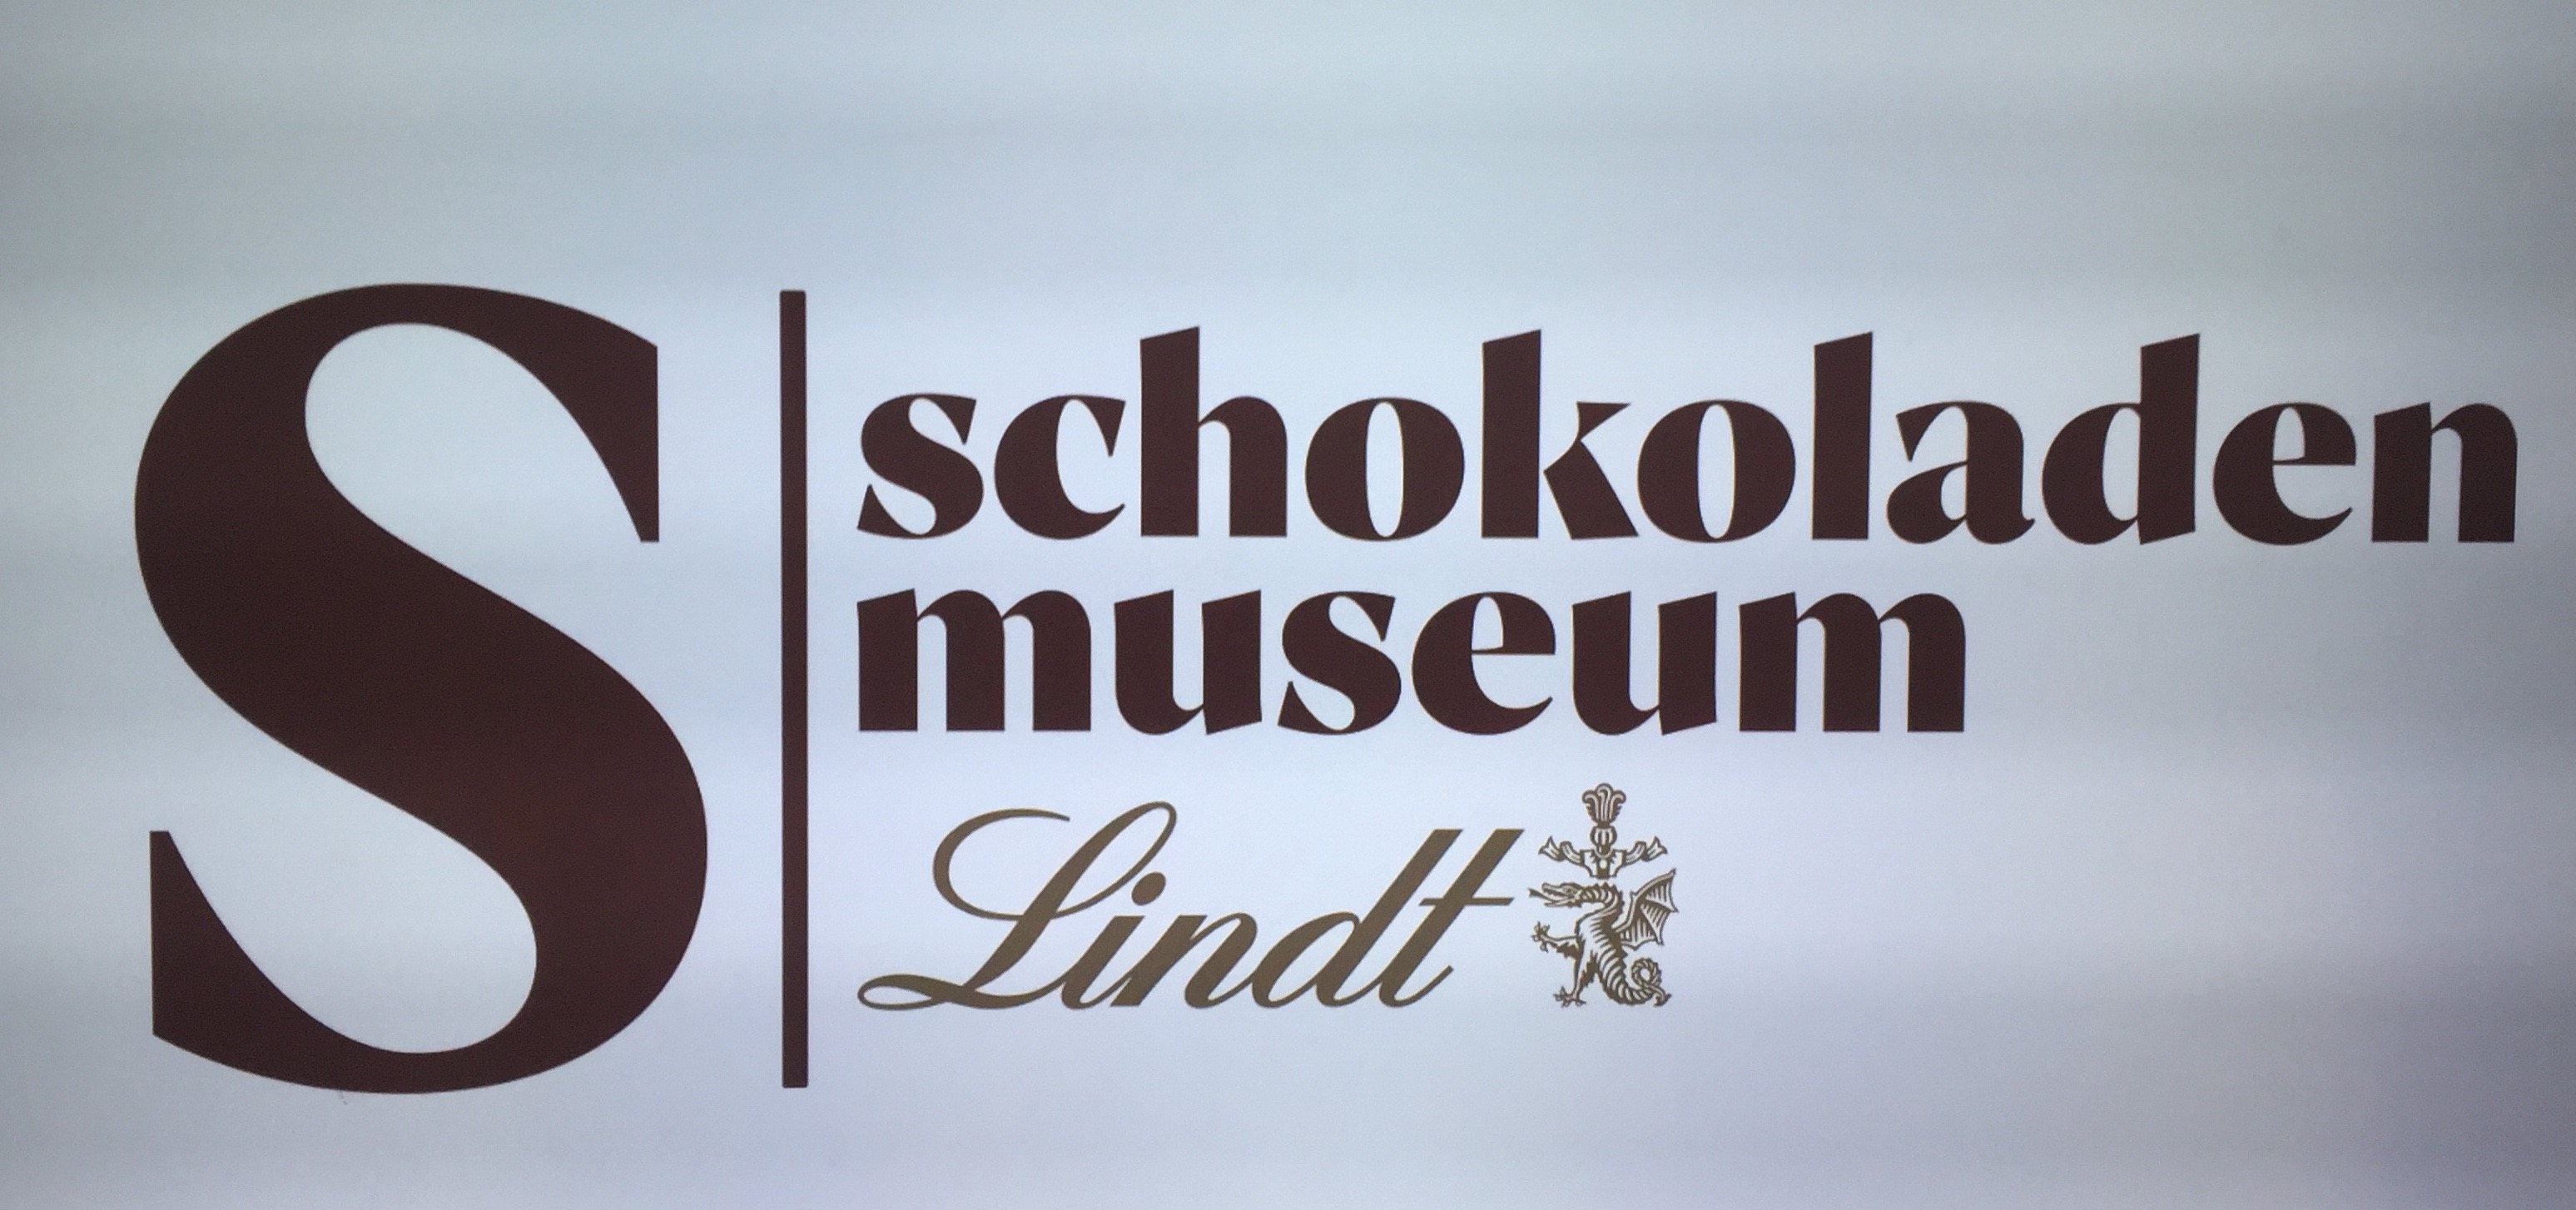 Schokoladenmuseum Köln schließt Bildungspatenschaft mit Offener Schule Köln